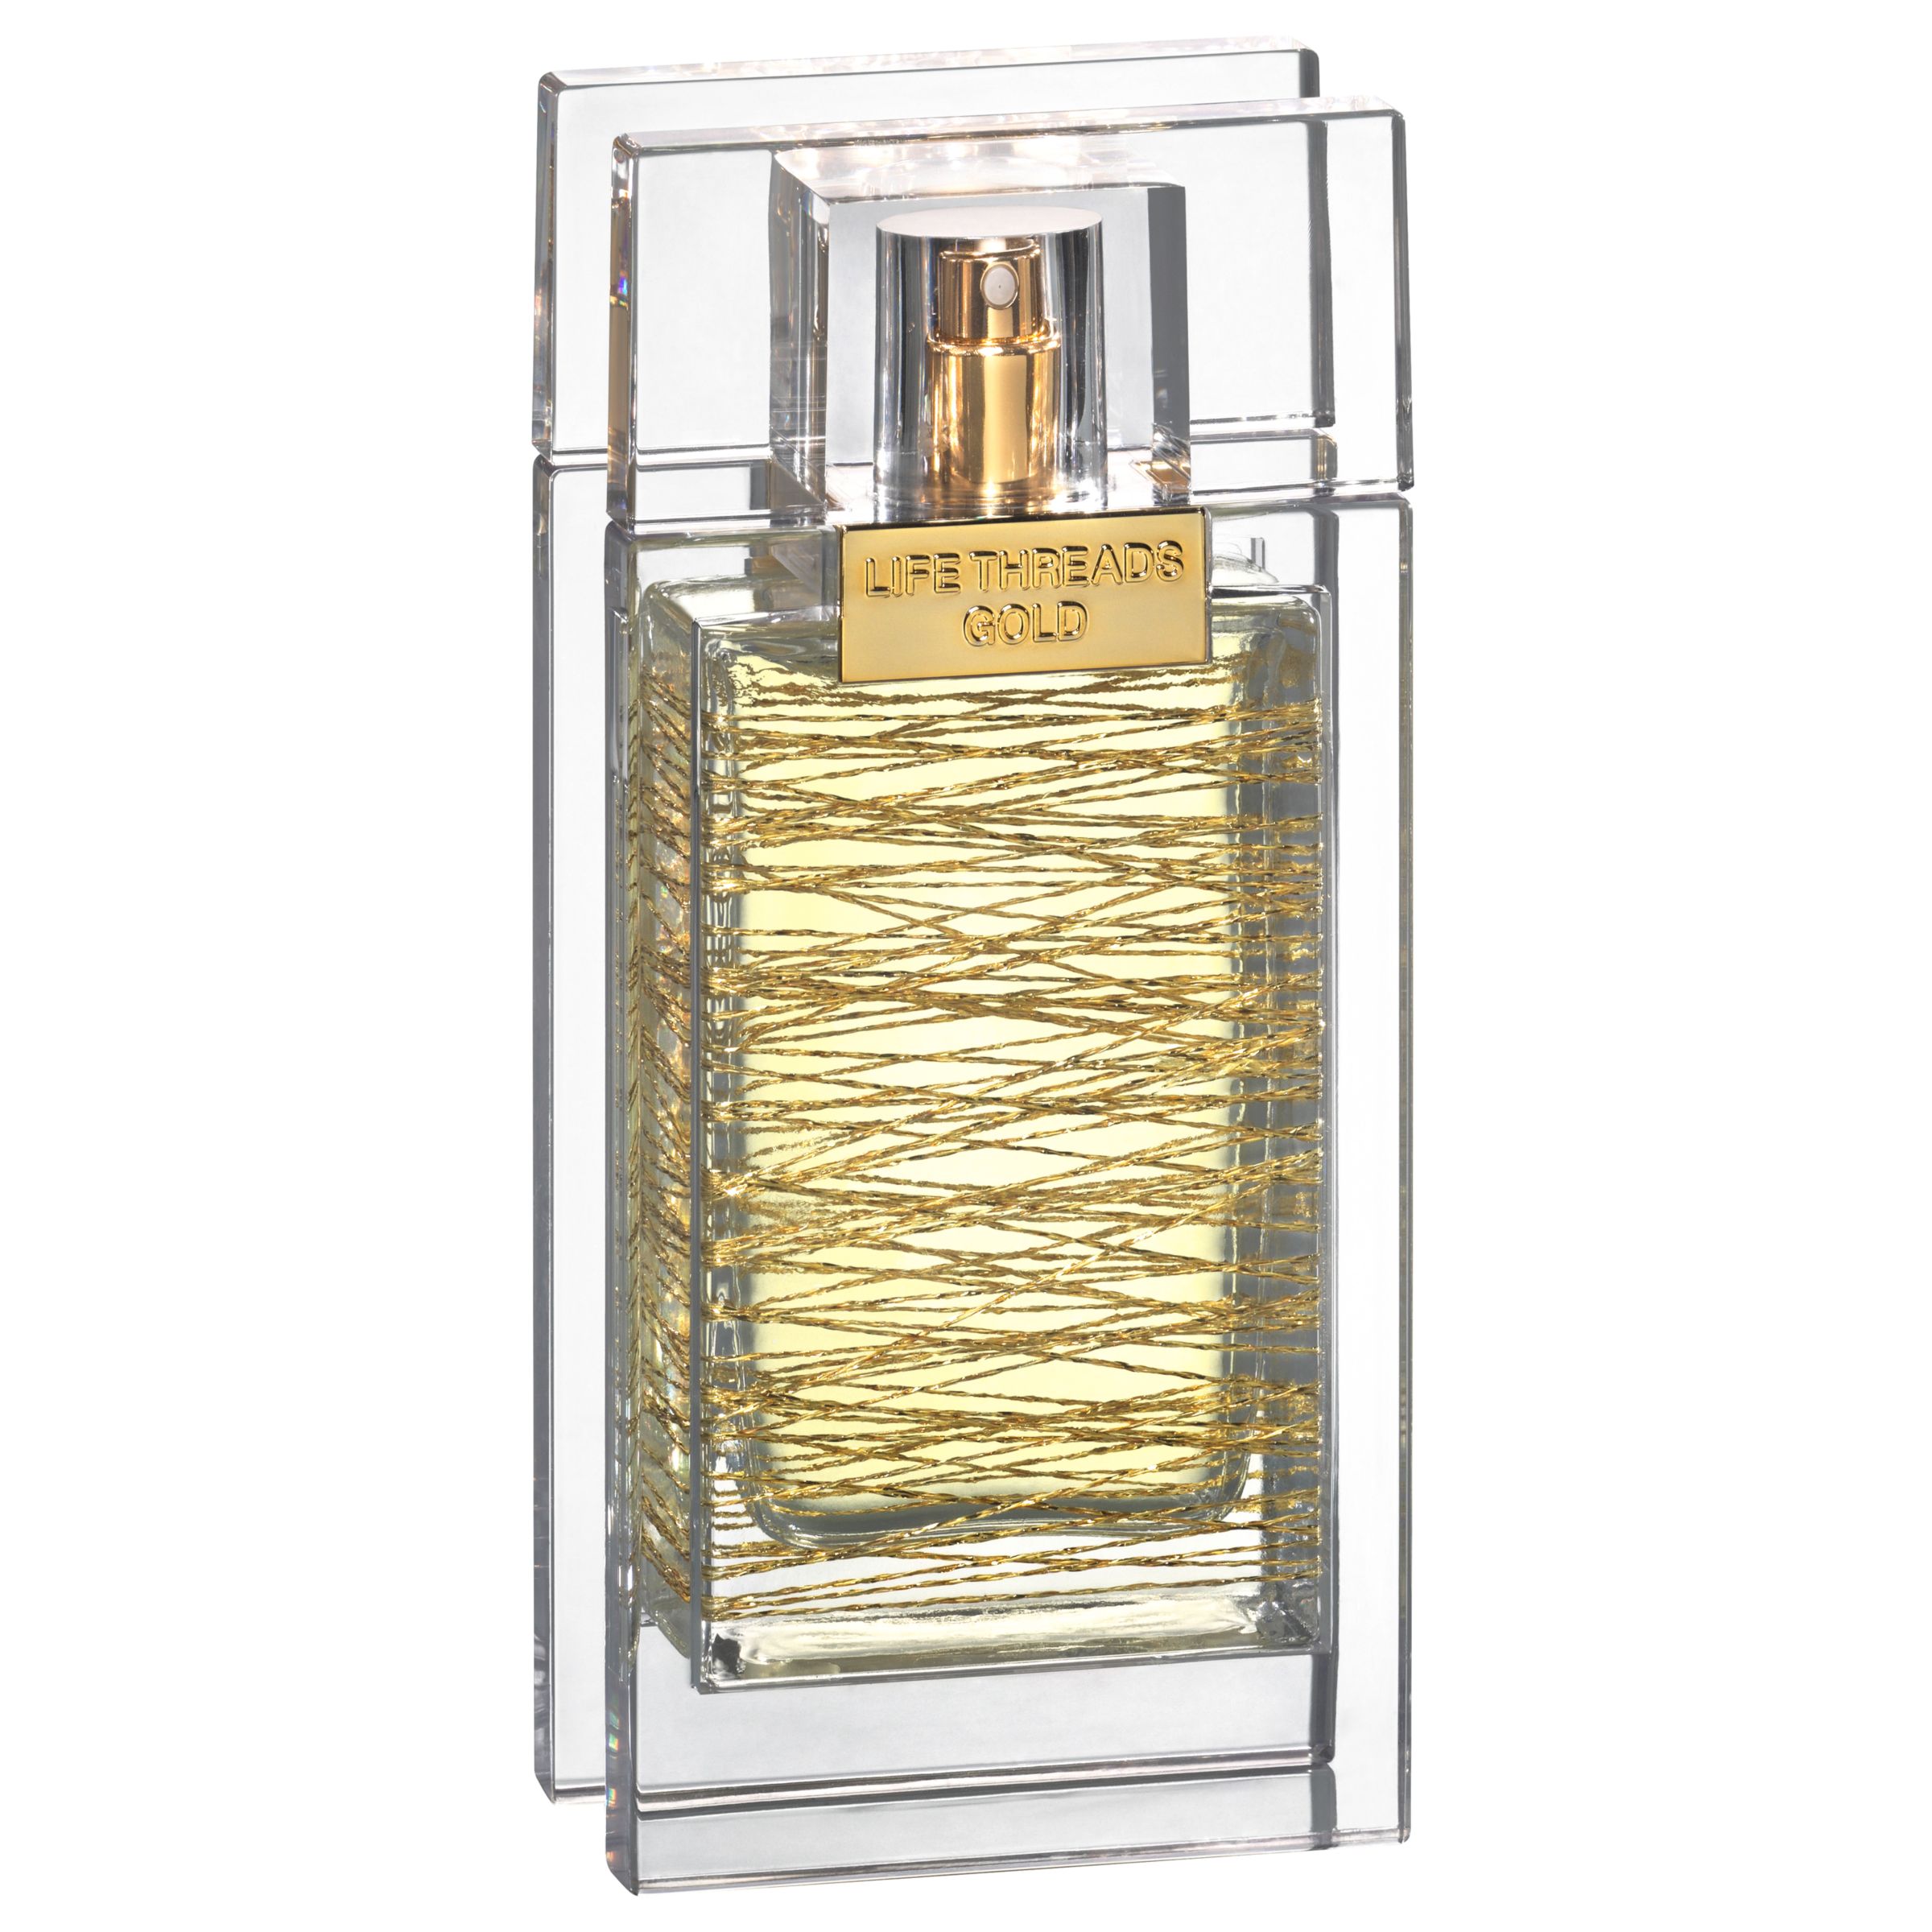 La Prairie Life Threads Gold Eau de Parfum, 50ml at John Lewis & Partners